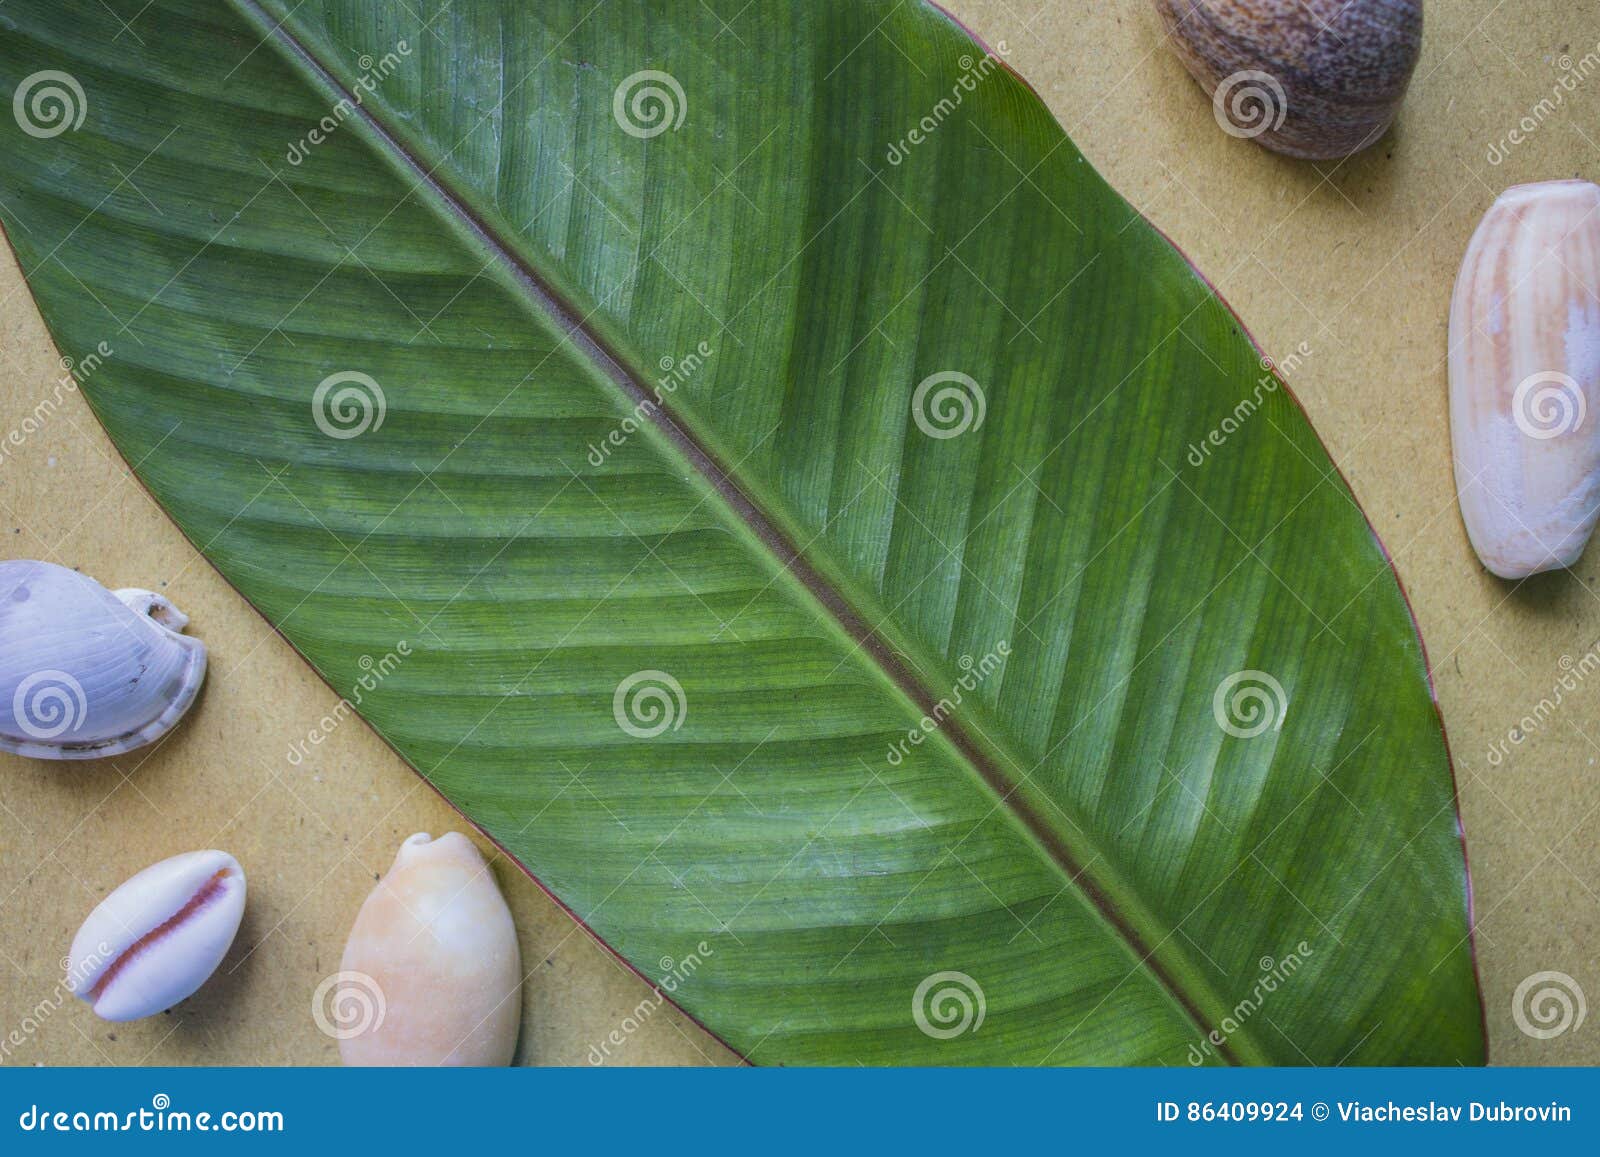 香蕉叶子 库存照片. 图片 包括有 自然, 夏天, 增长, 生长, 详细资料, 查出, 本质, 剪报, 五颜六色 - 118170044